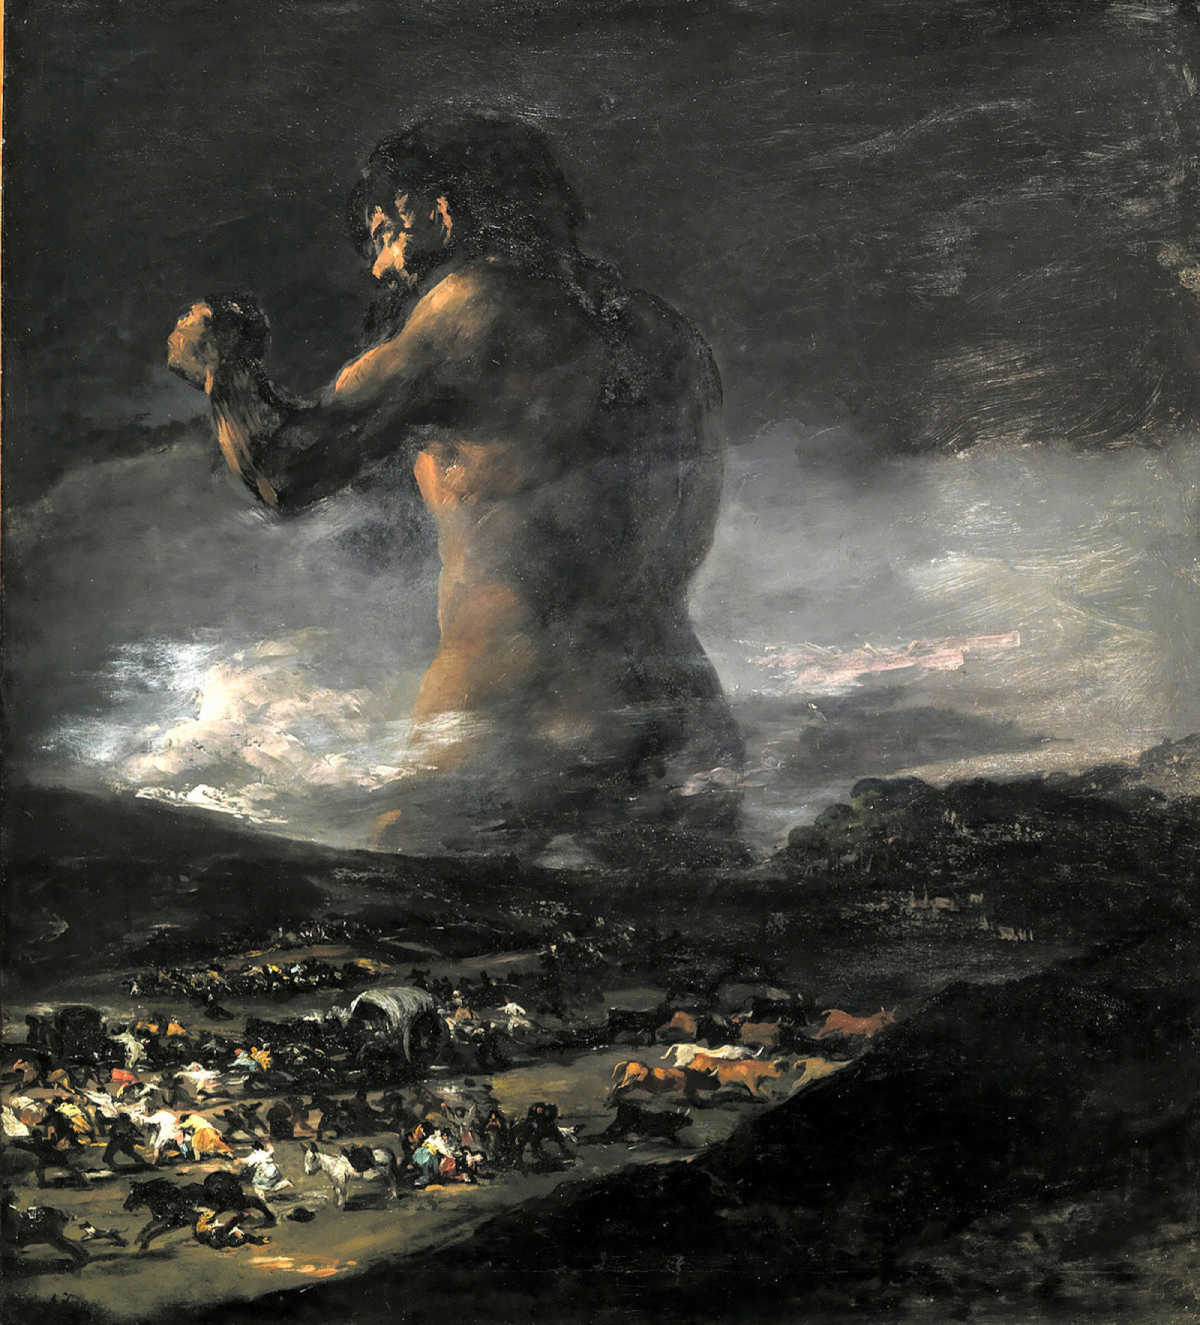 El coloso. Cuadro atribuido históricamente a Francisco de Goya que tiene todos los visos de ser obra del pintor valenciano Asensio Juliá